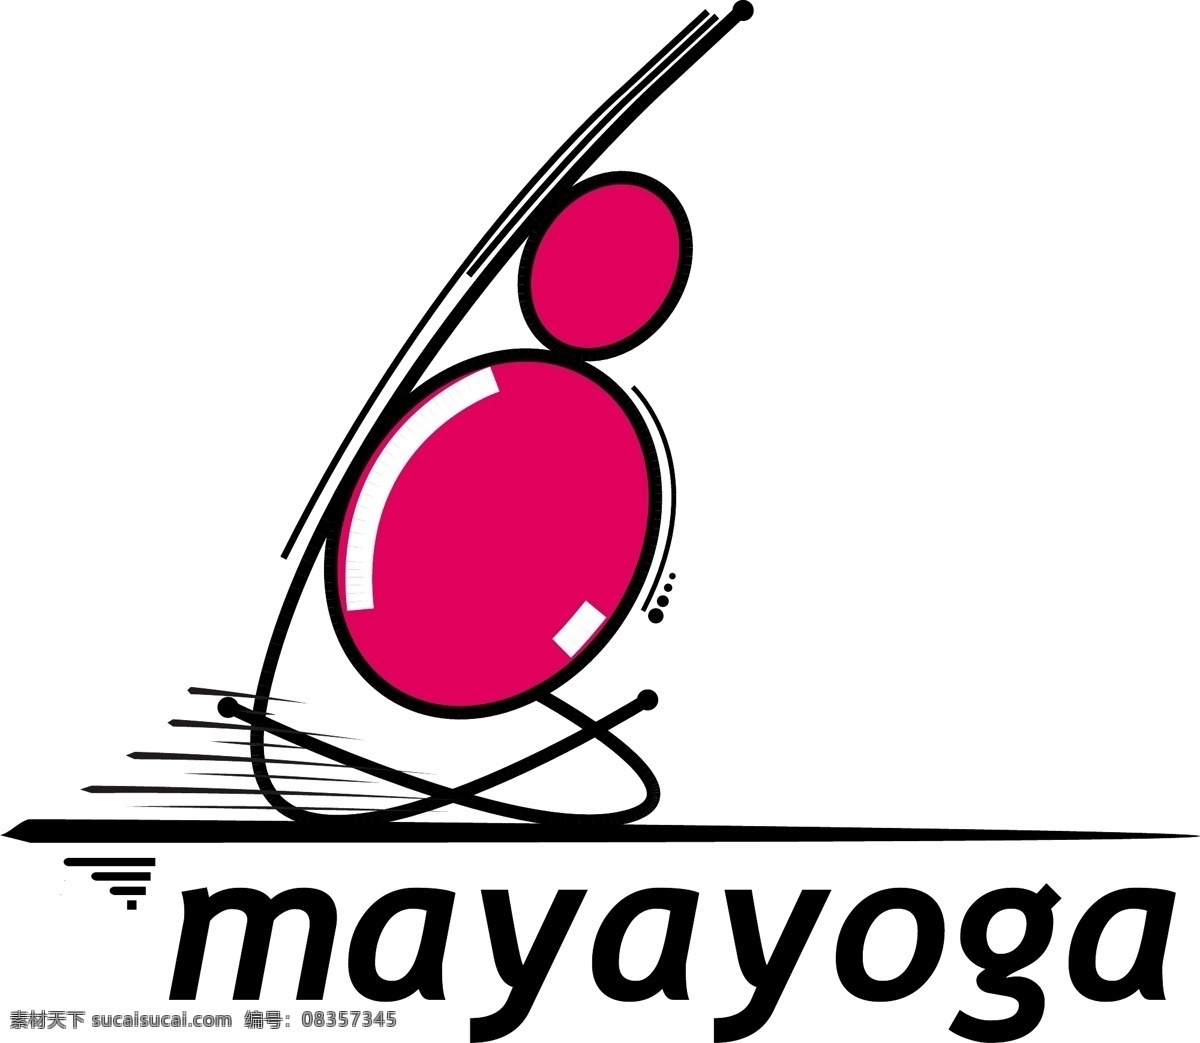 玛雅瑜伽 矢量标志下载 免费矢量标识 商标 品牌标识 标识 矢量 免费 品牌 公司 白色